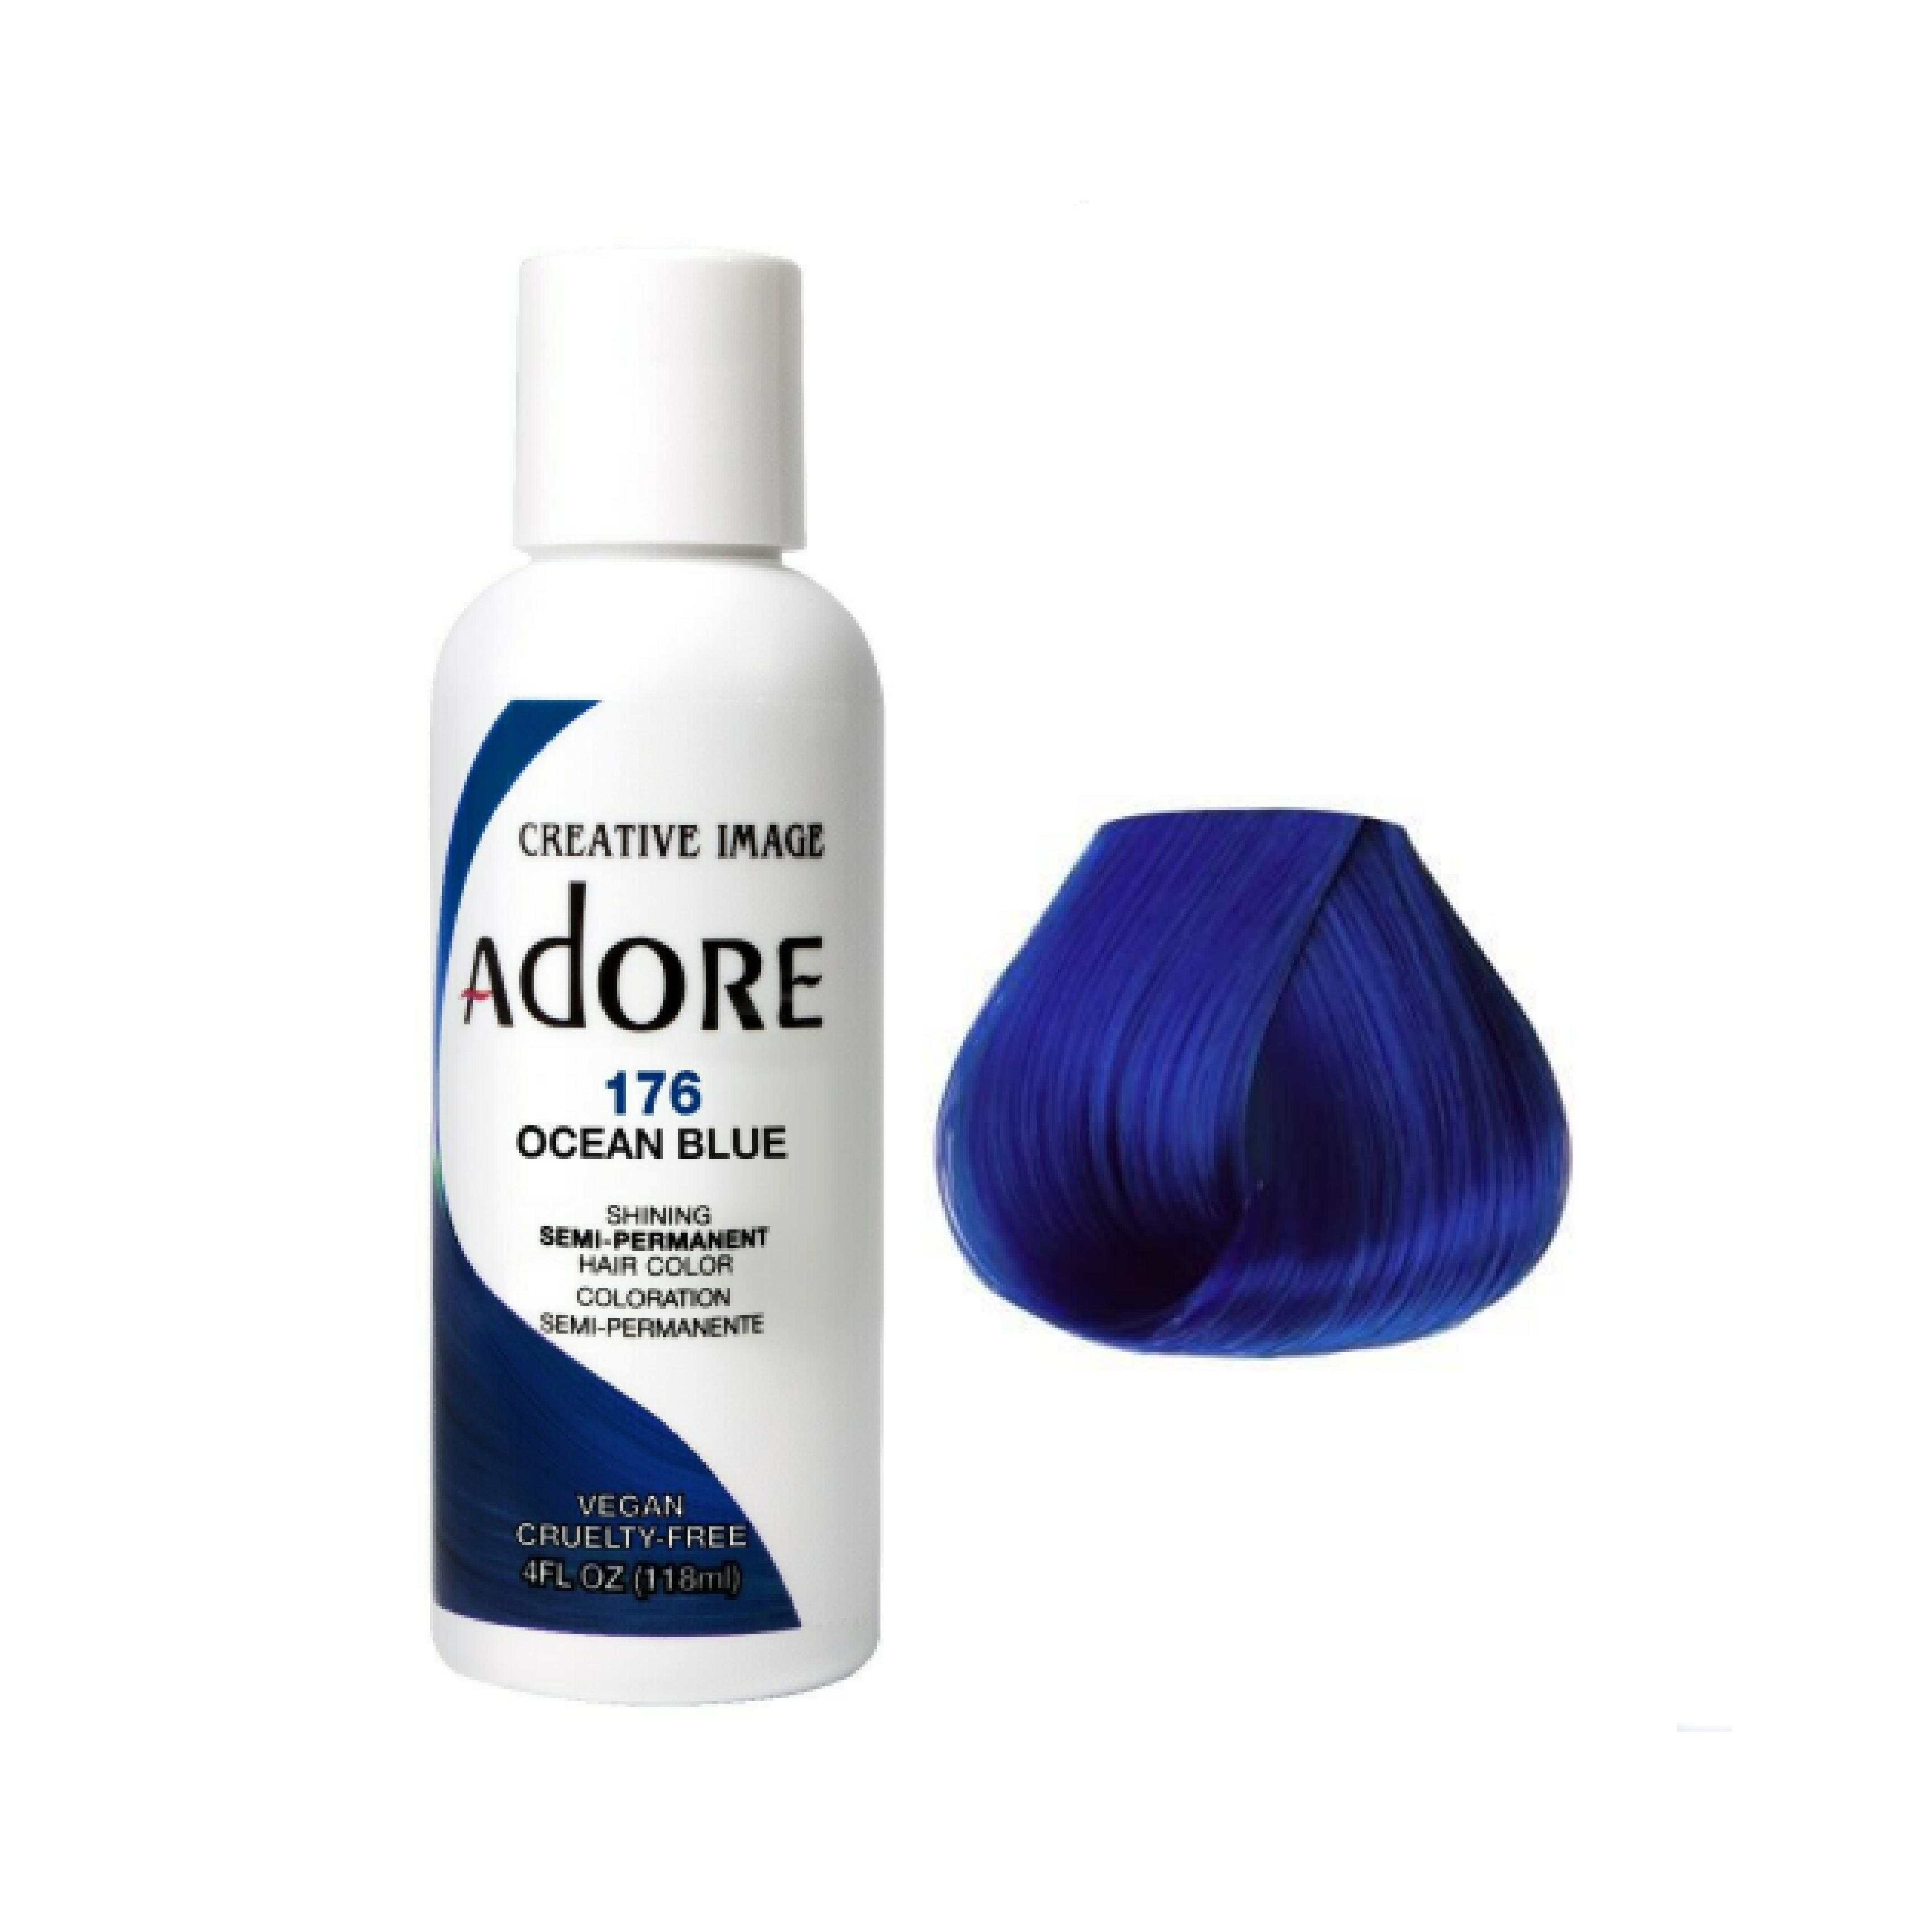 Adore Semi Permanent Ocean Blue Hair Colour 176 - 118ml